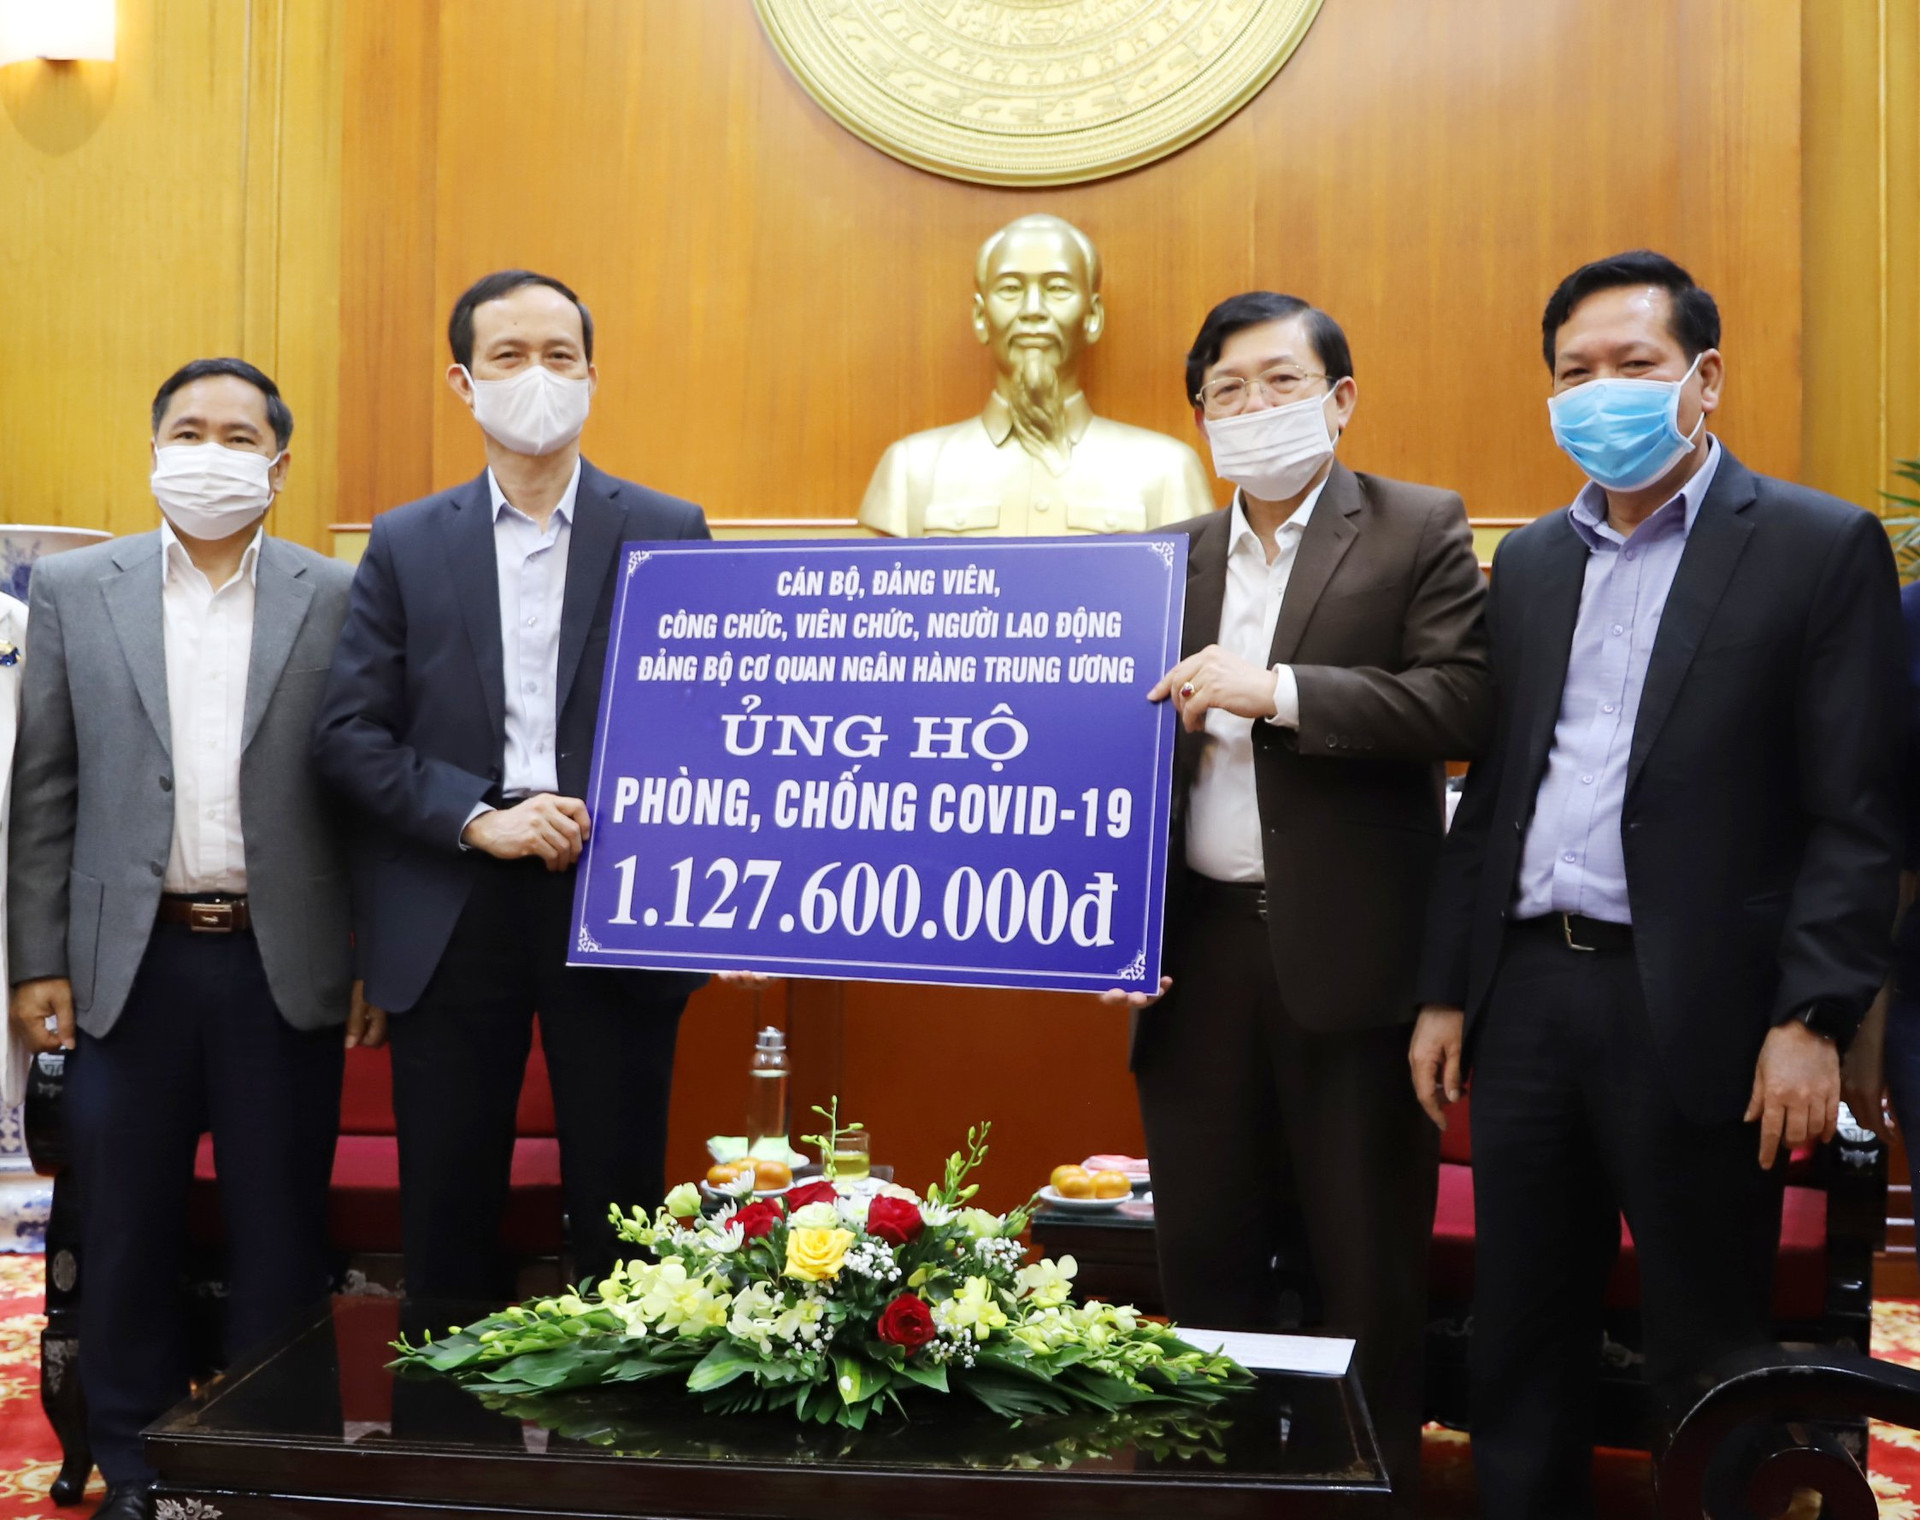 Phó Chủ tịch Nguyễn Hữu Dũng tiếp nhận ủng hộ từ Đảng bộ cơ quan Ngân hàng Trung ương.